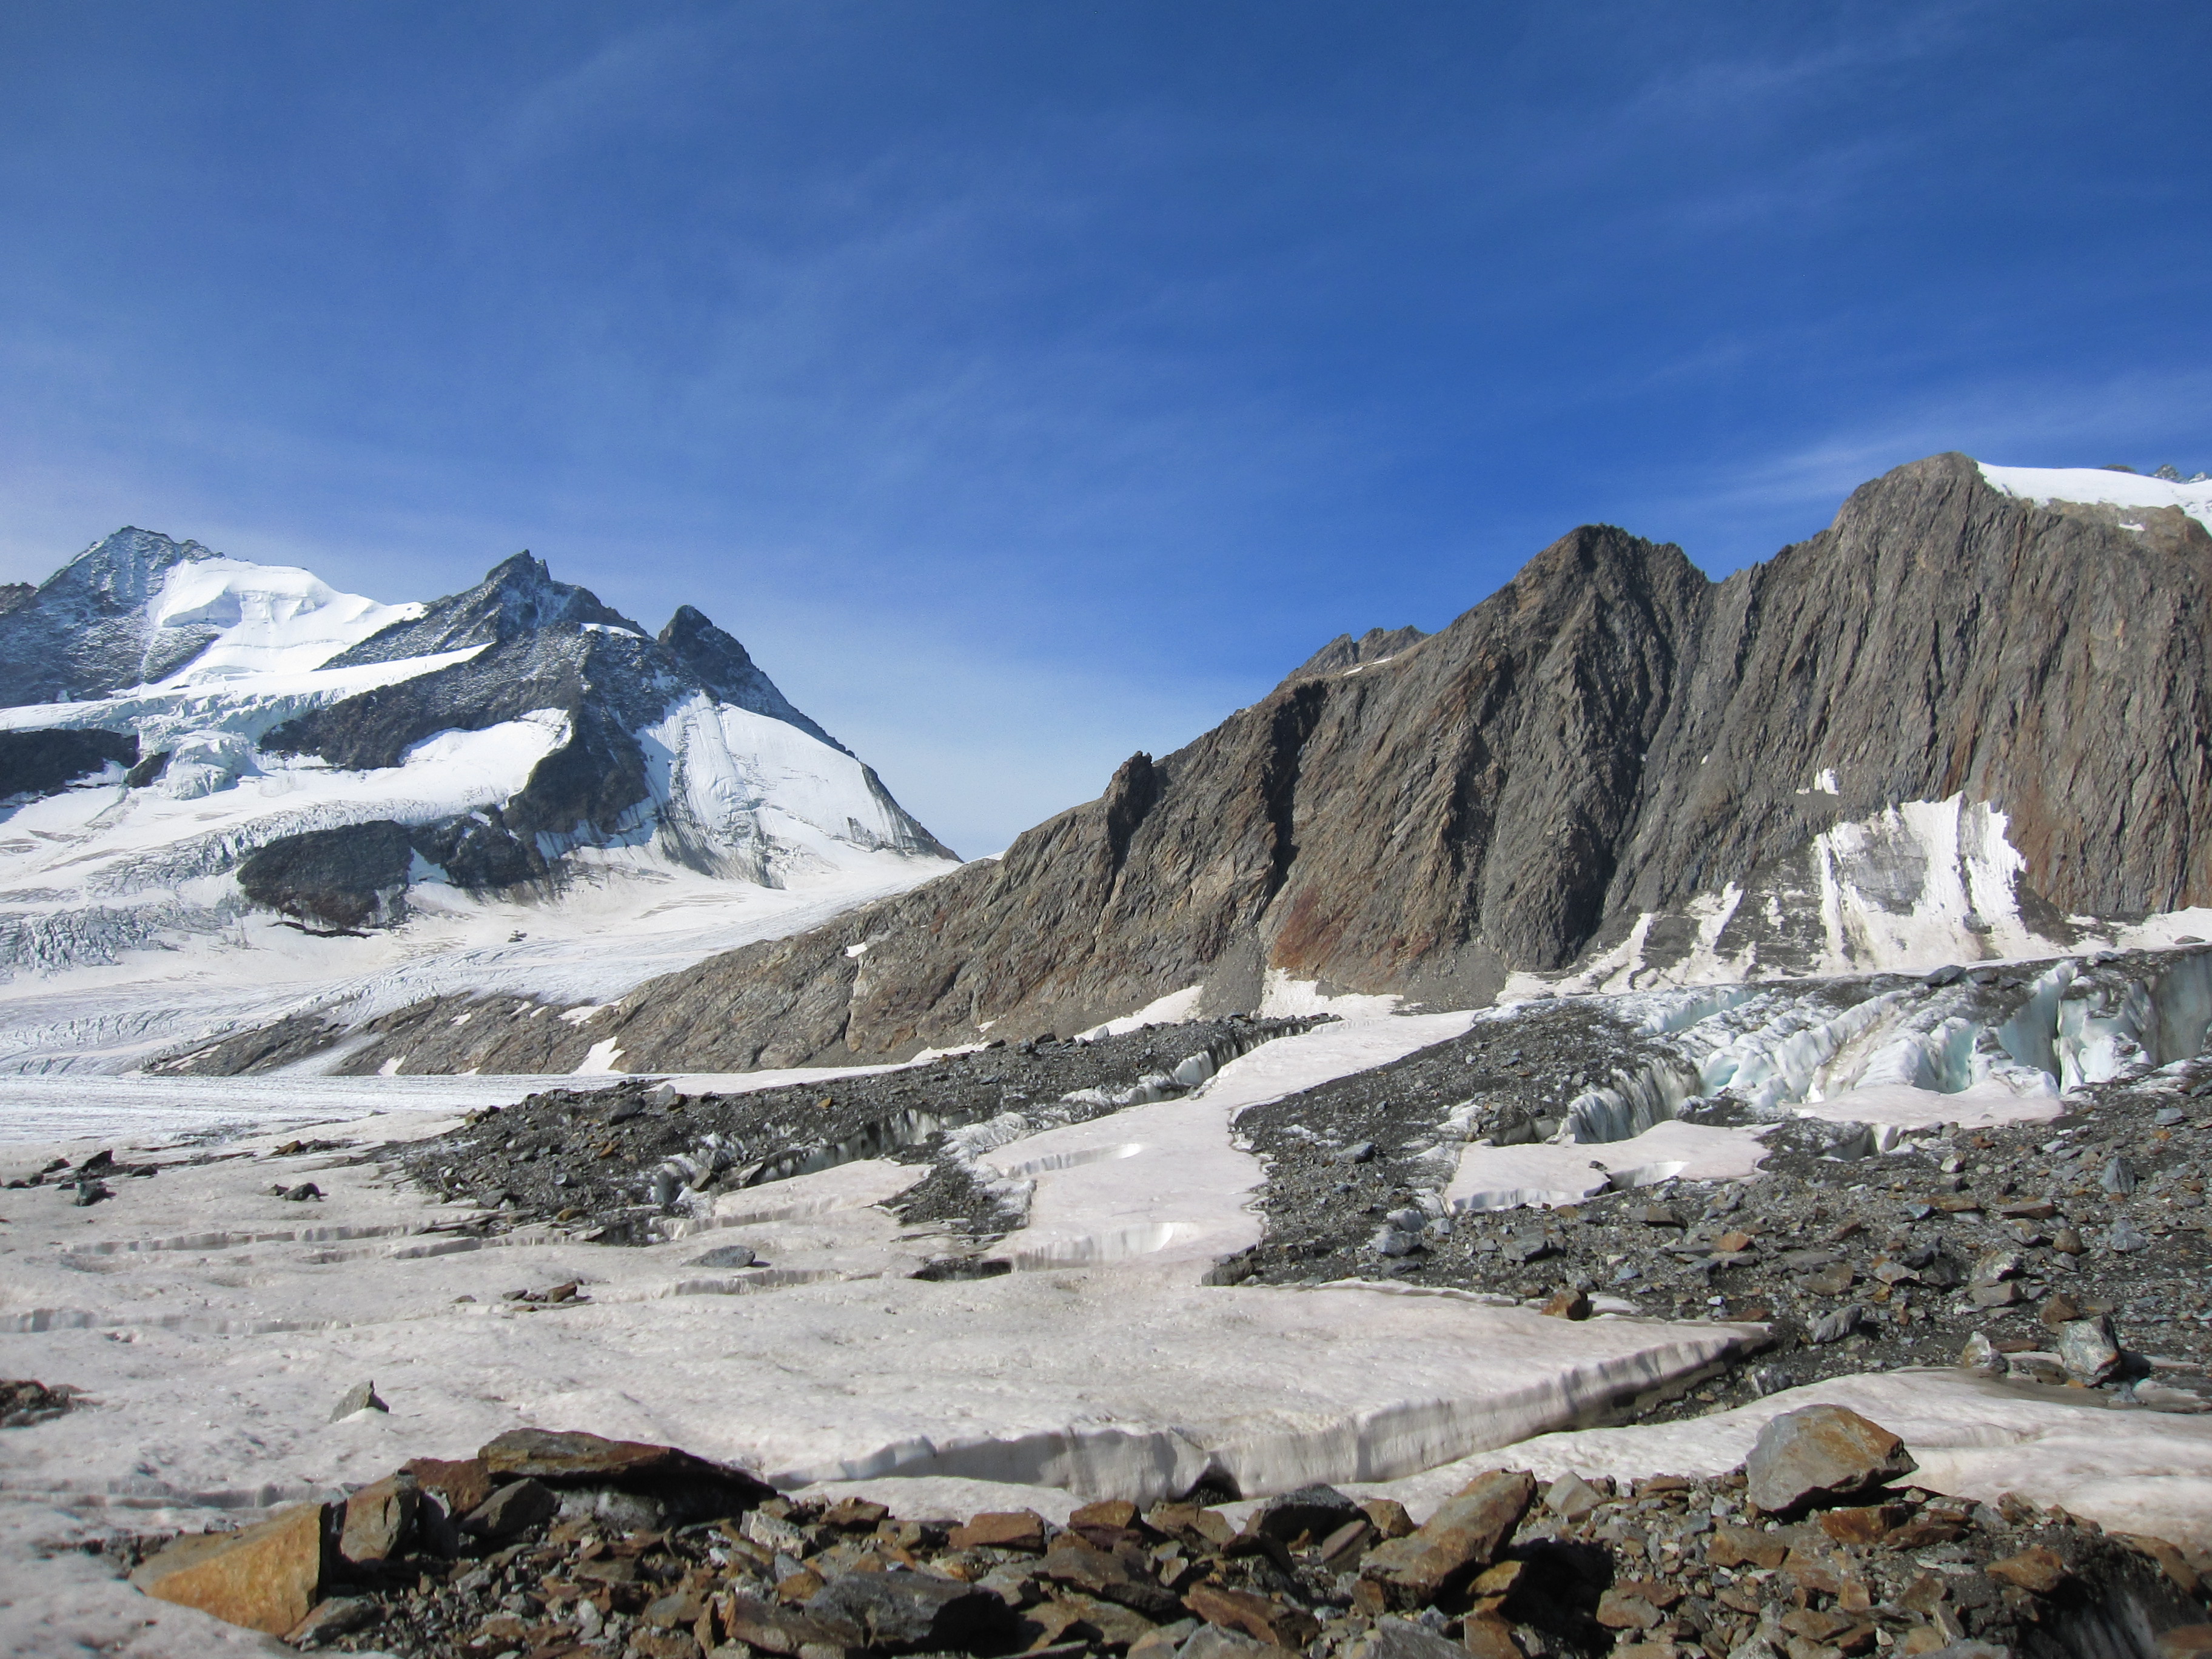 Morphologische Einschnitte in den steilen Felswänden des UNESCO-Welterbe Jungfrau-Aletsch zeugen von leichter erodierbaren steilen Störungszonen. Auch der Einschnitt der Grünhornlücke (Bildmitte) ist auf das präferenzielle Einschneiden durch die Glazialerosion zurückzuführen. Bild: Marco Herwegh